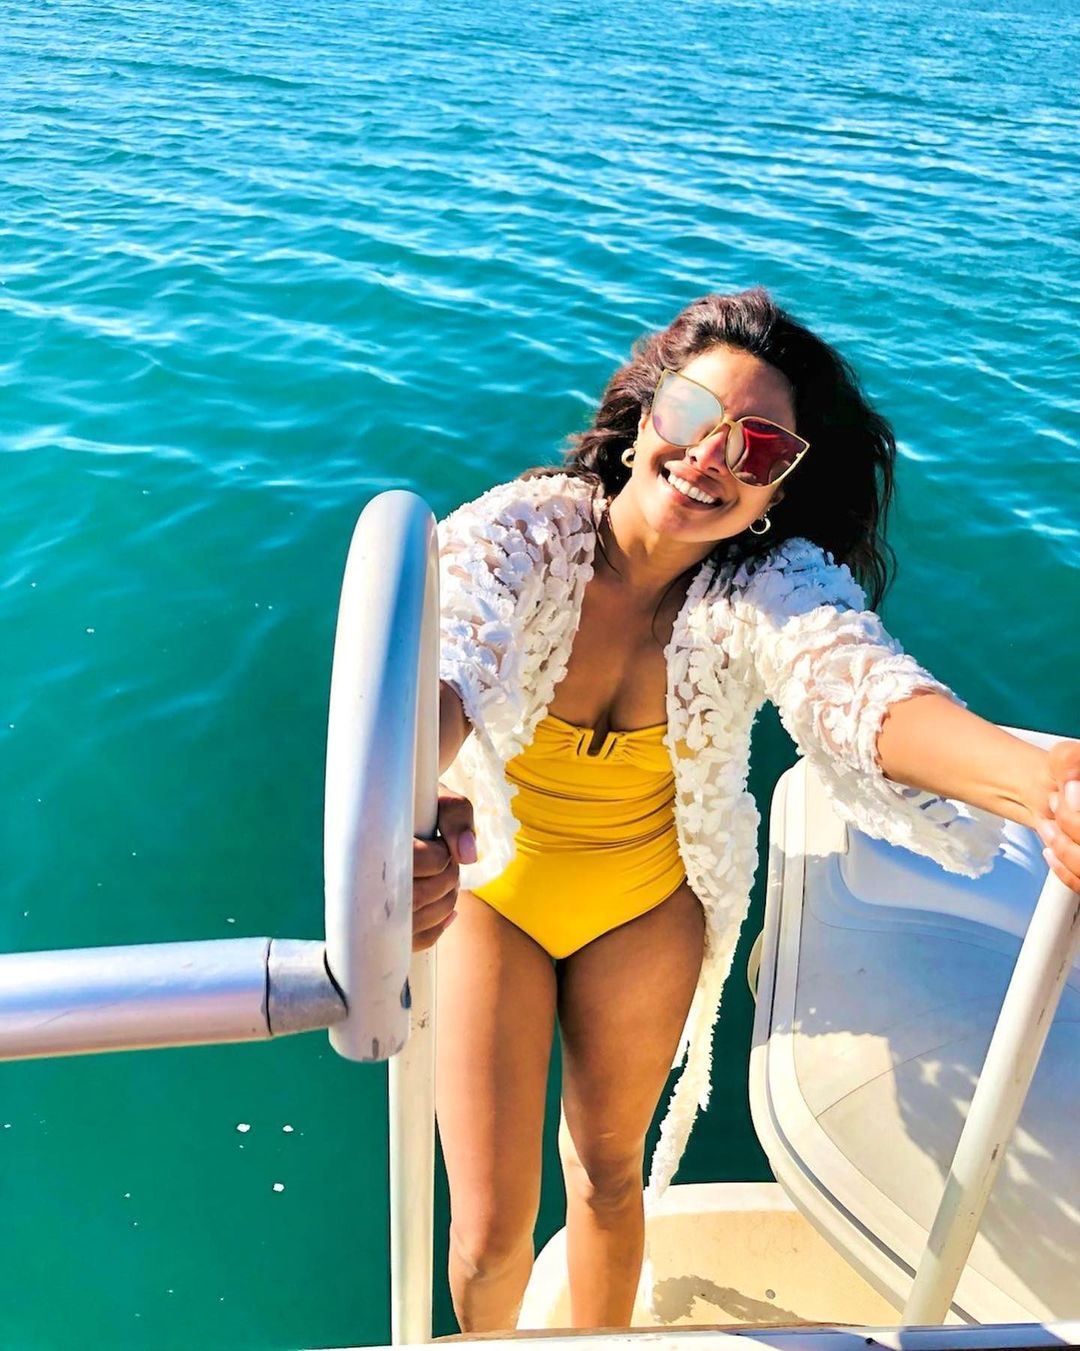 Photos n°4 : Priyanka Chopra is On a Boat!